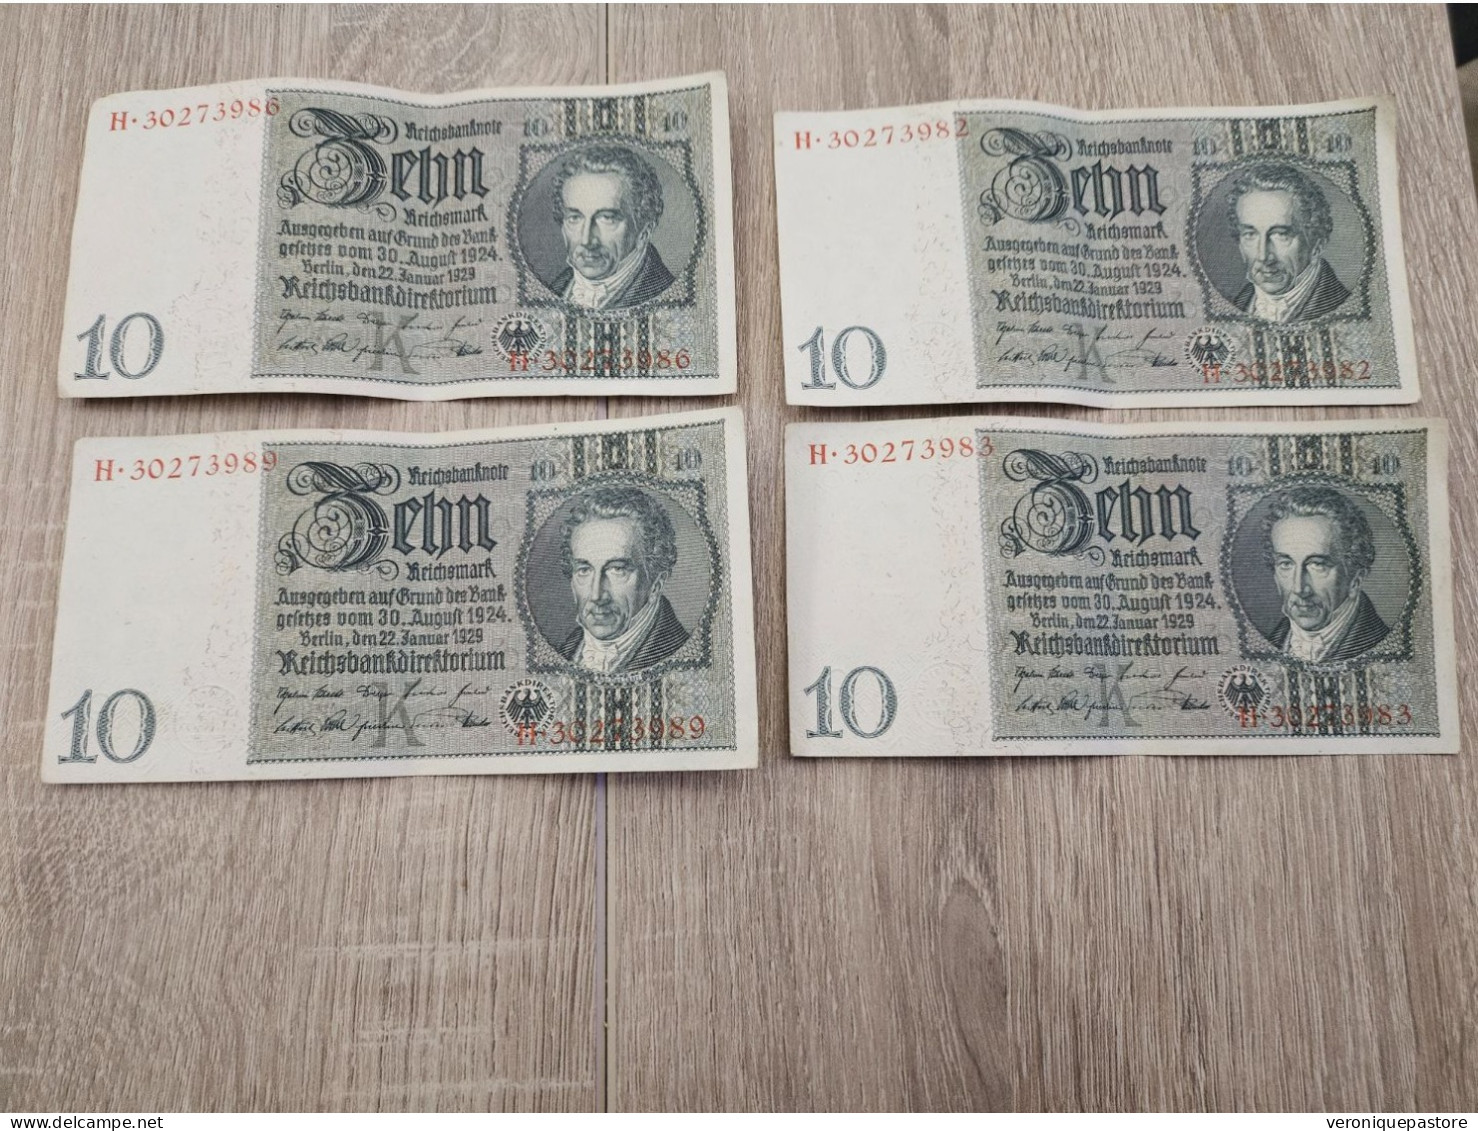 4 Billets Allemands - 10 Mark